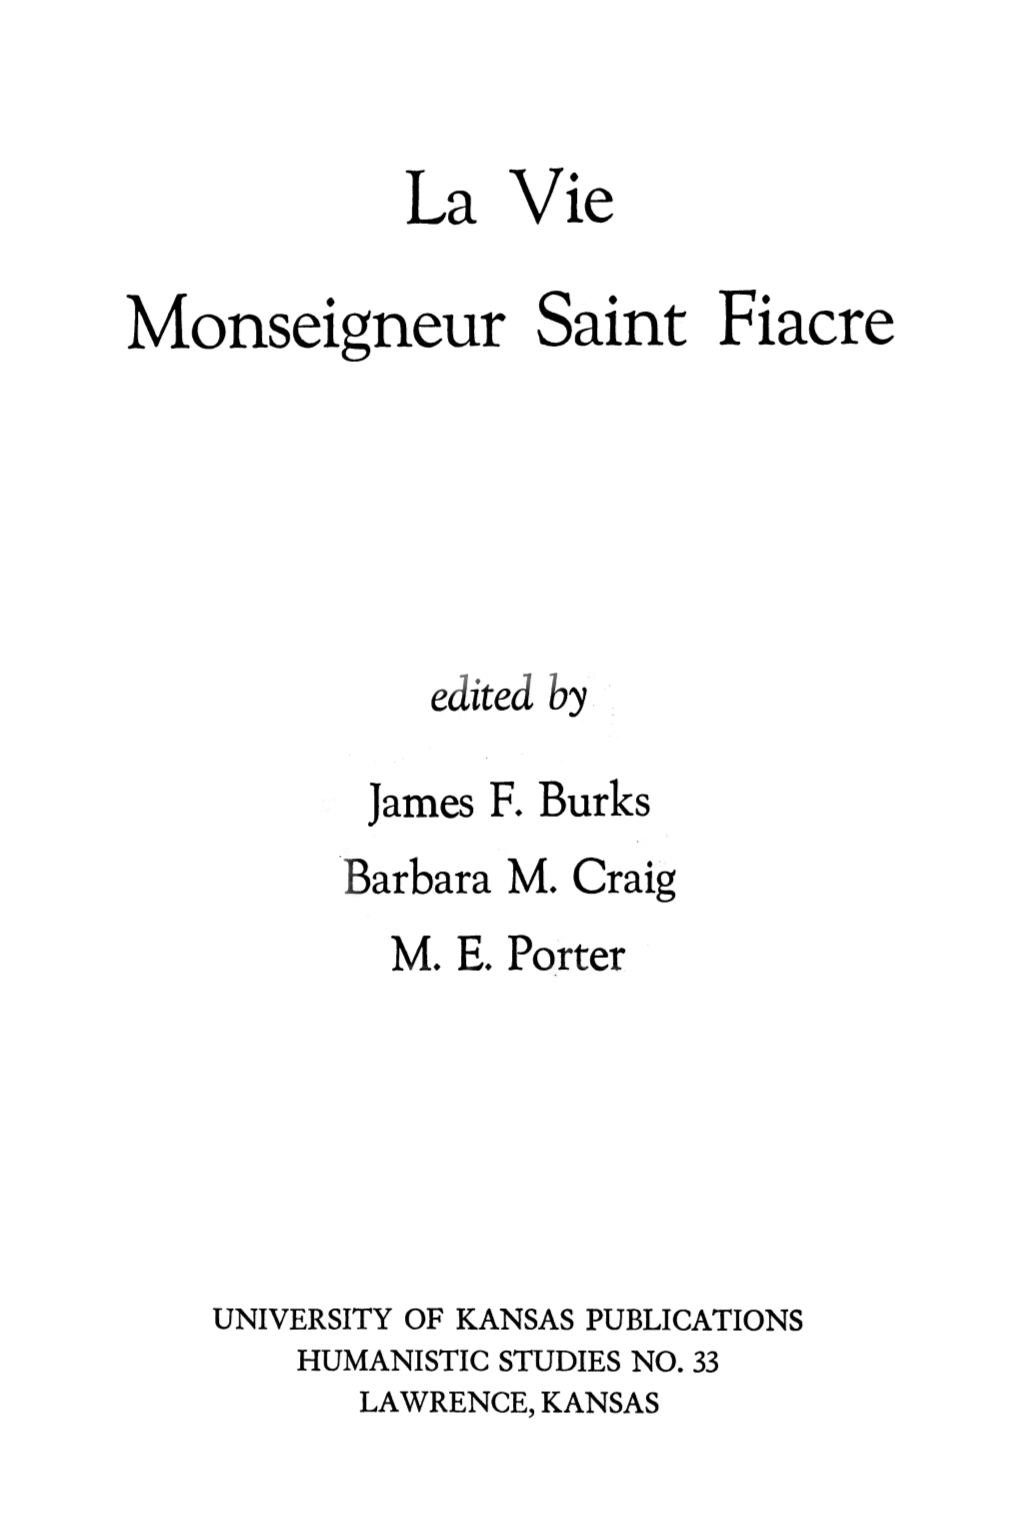 La Vie Monseigneur Saint Fiacre